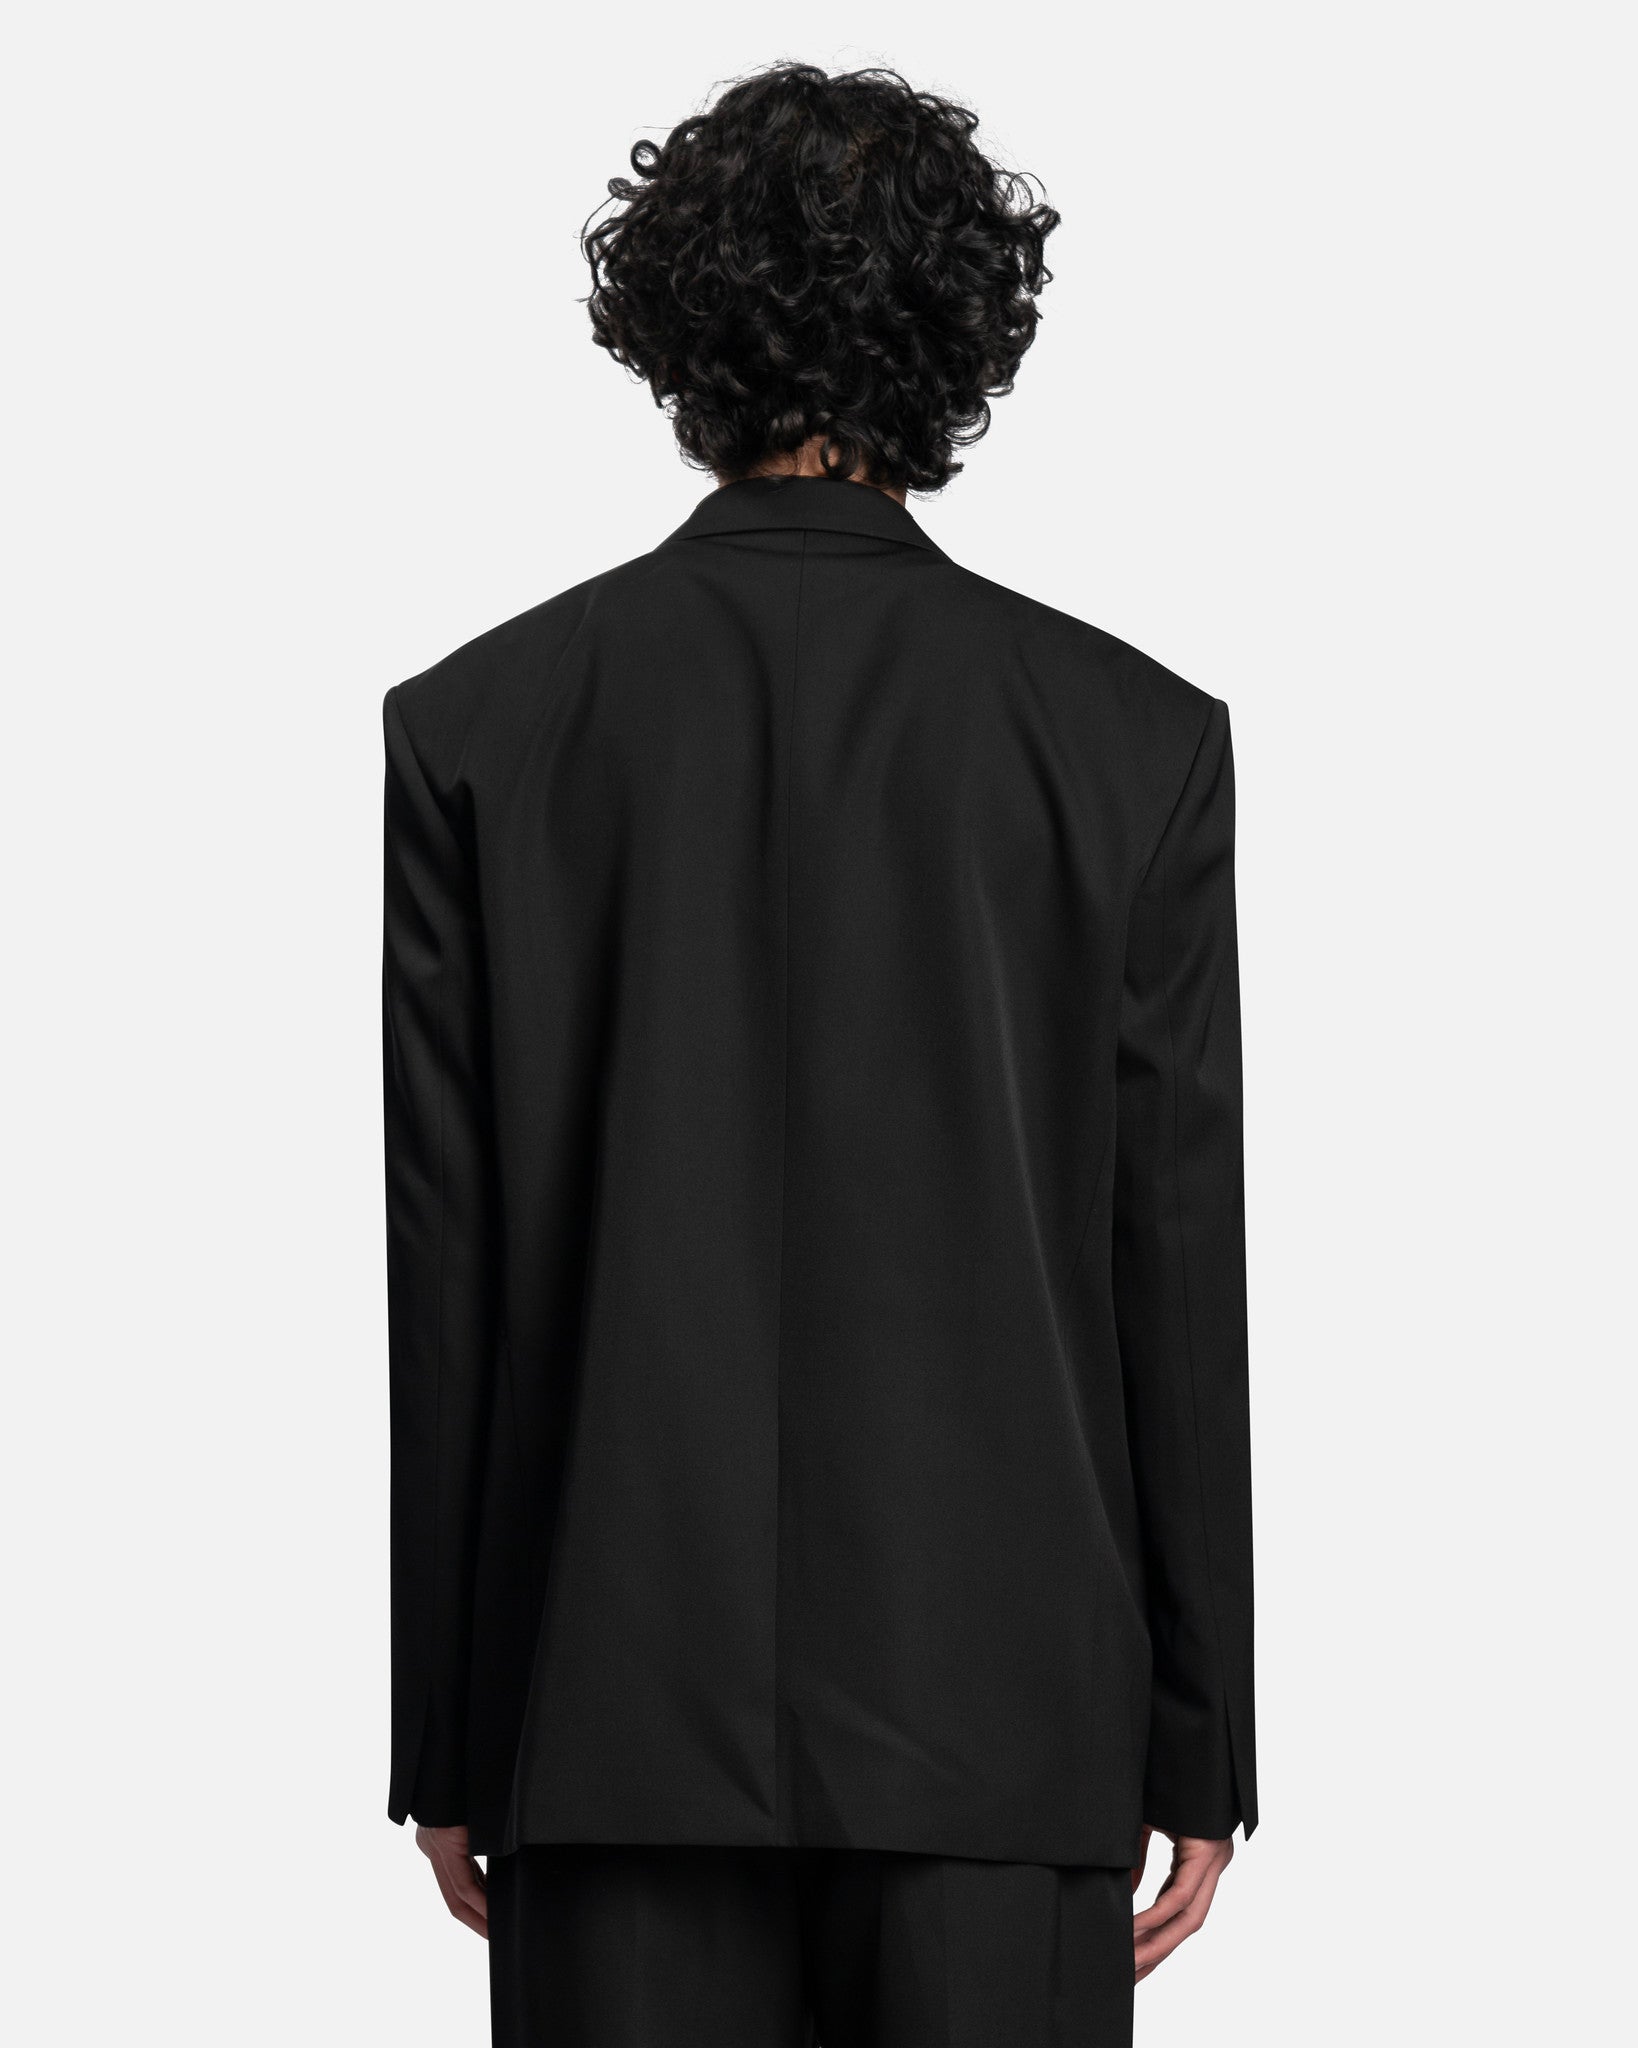 Juun.J Men's Jackets Front Zipper Two Button Single Jacket in Black